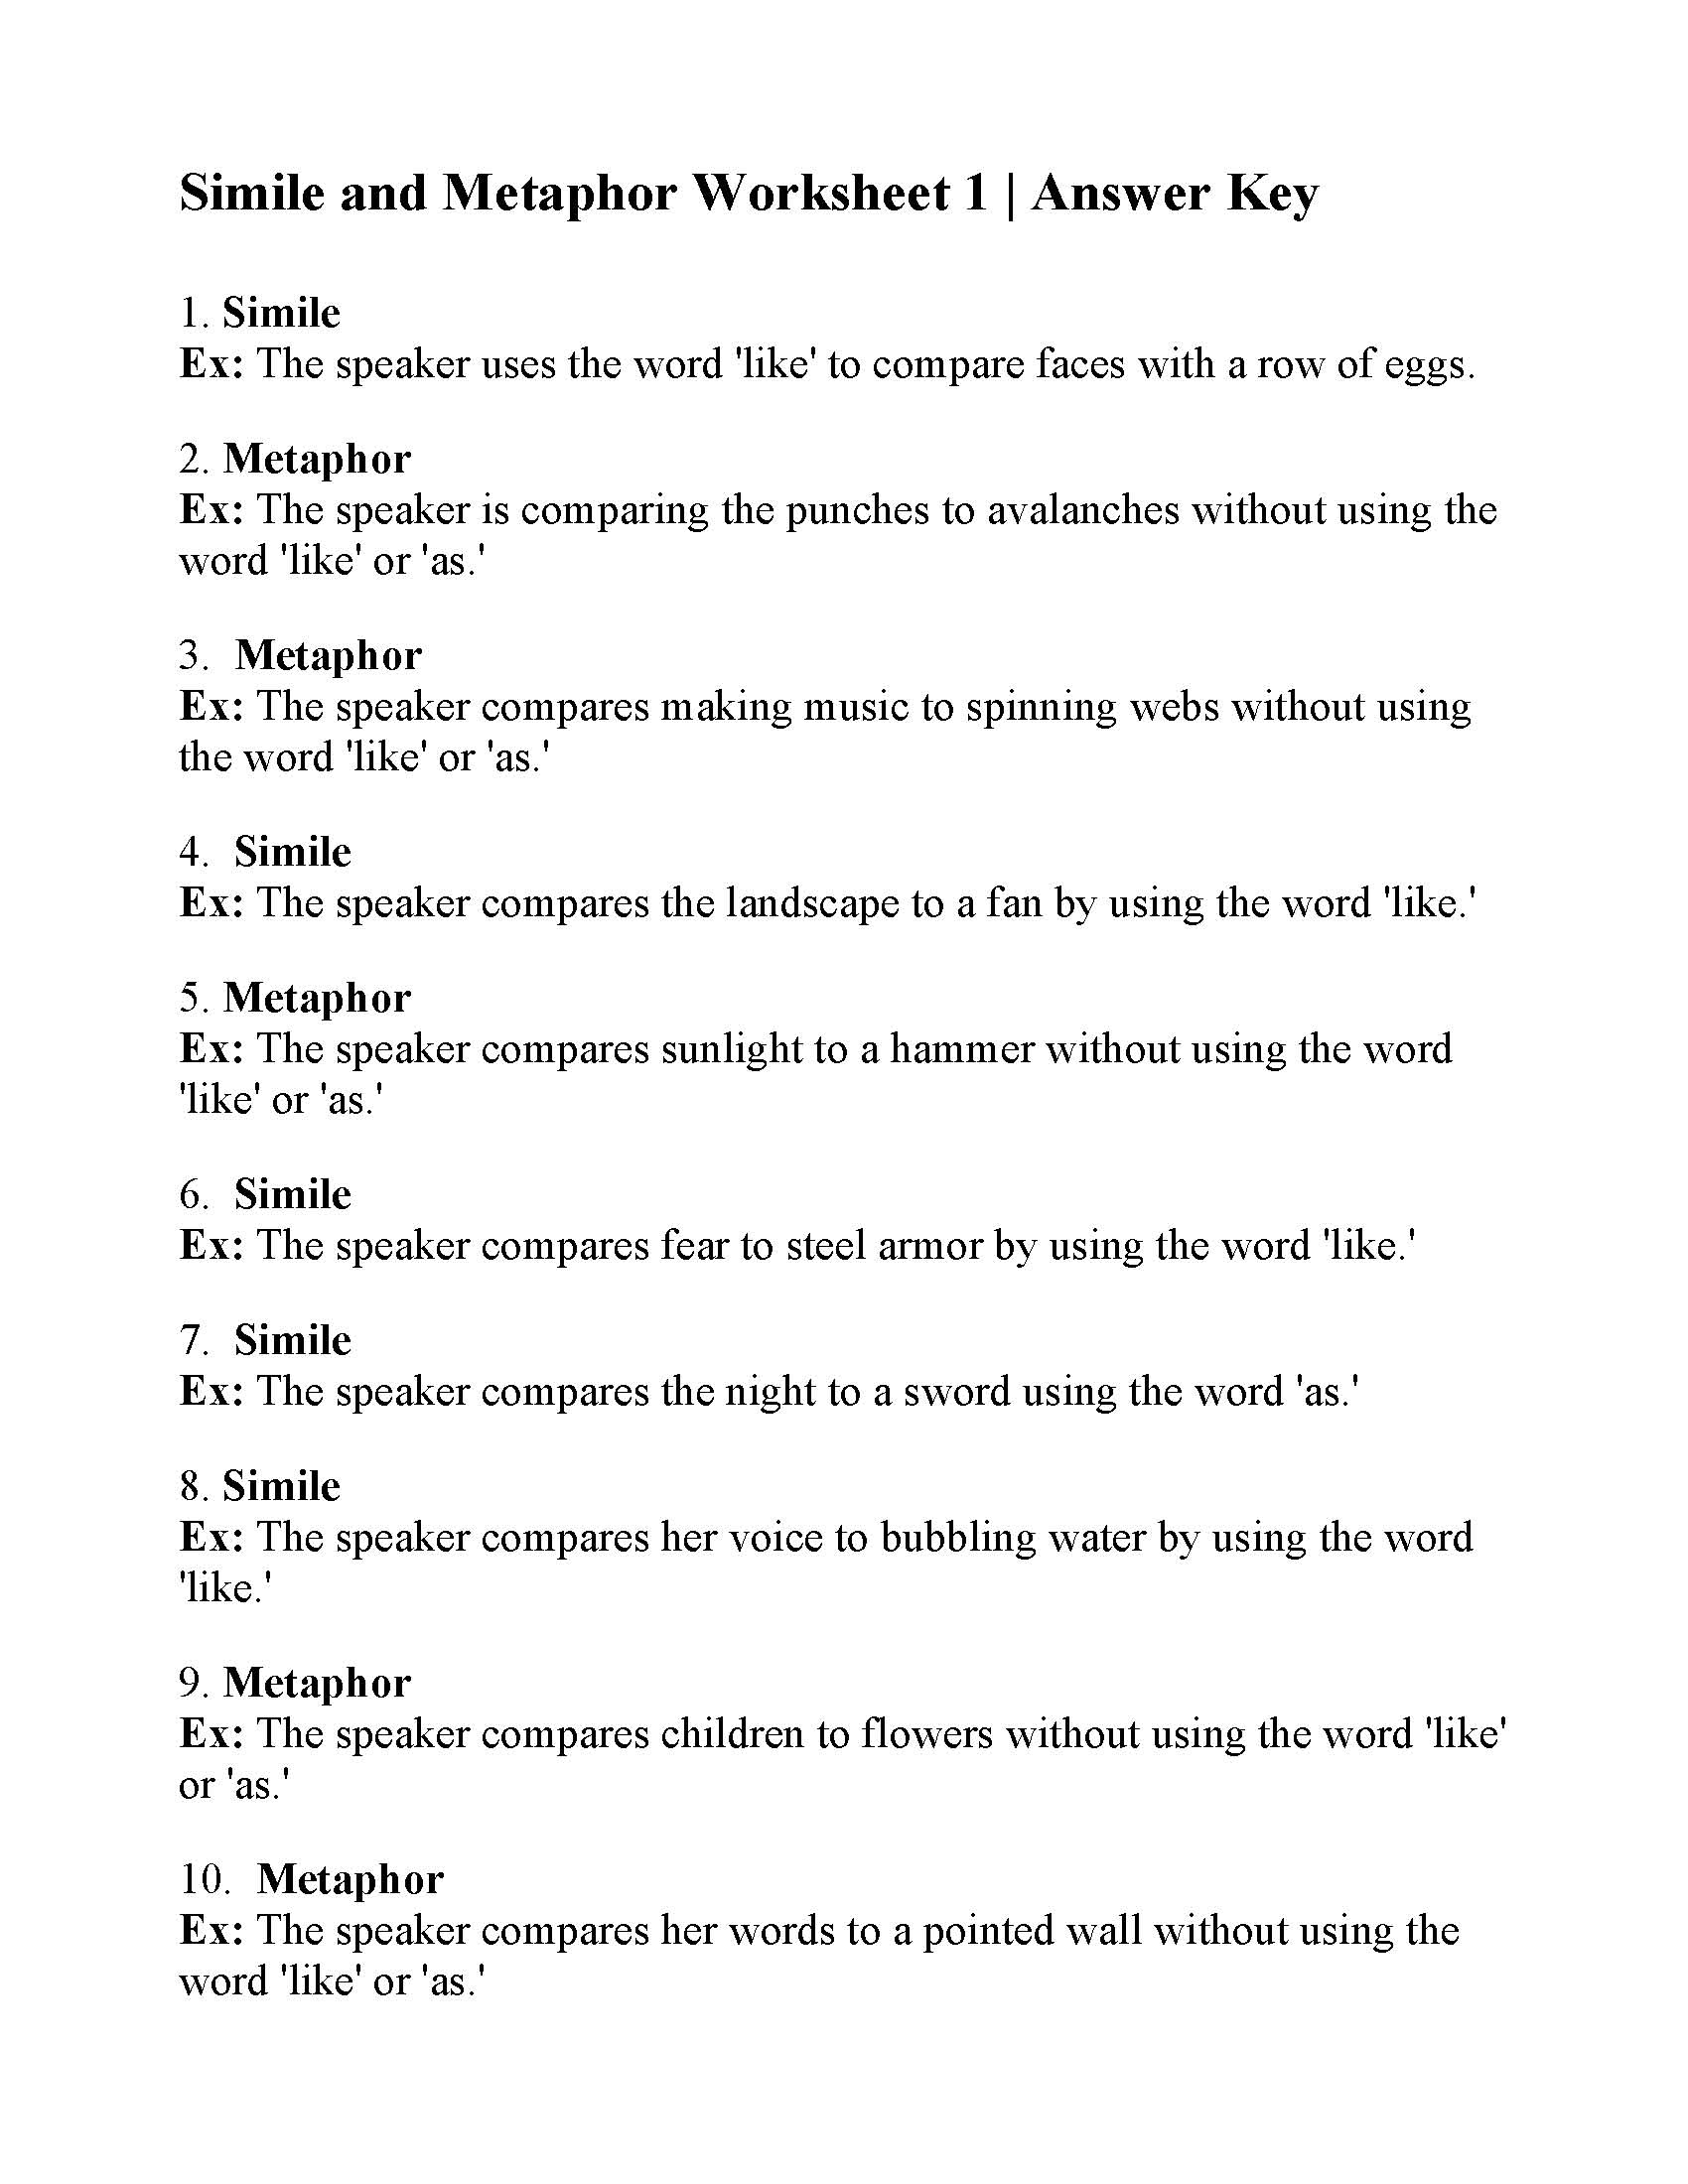 metaphor-worksheets-pdf-identifying-similes-metaphors-esl-worksheet-by-jridder-t-his